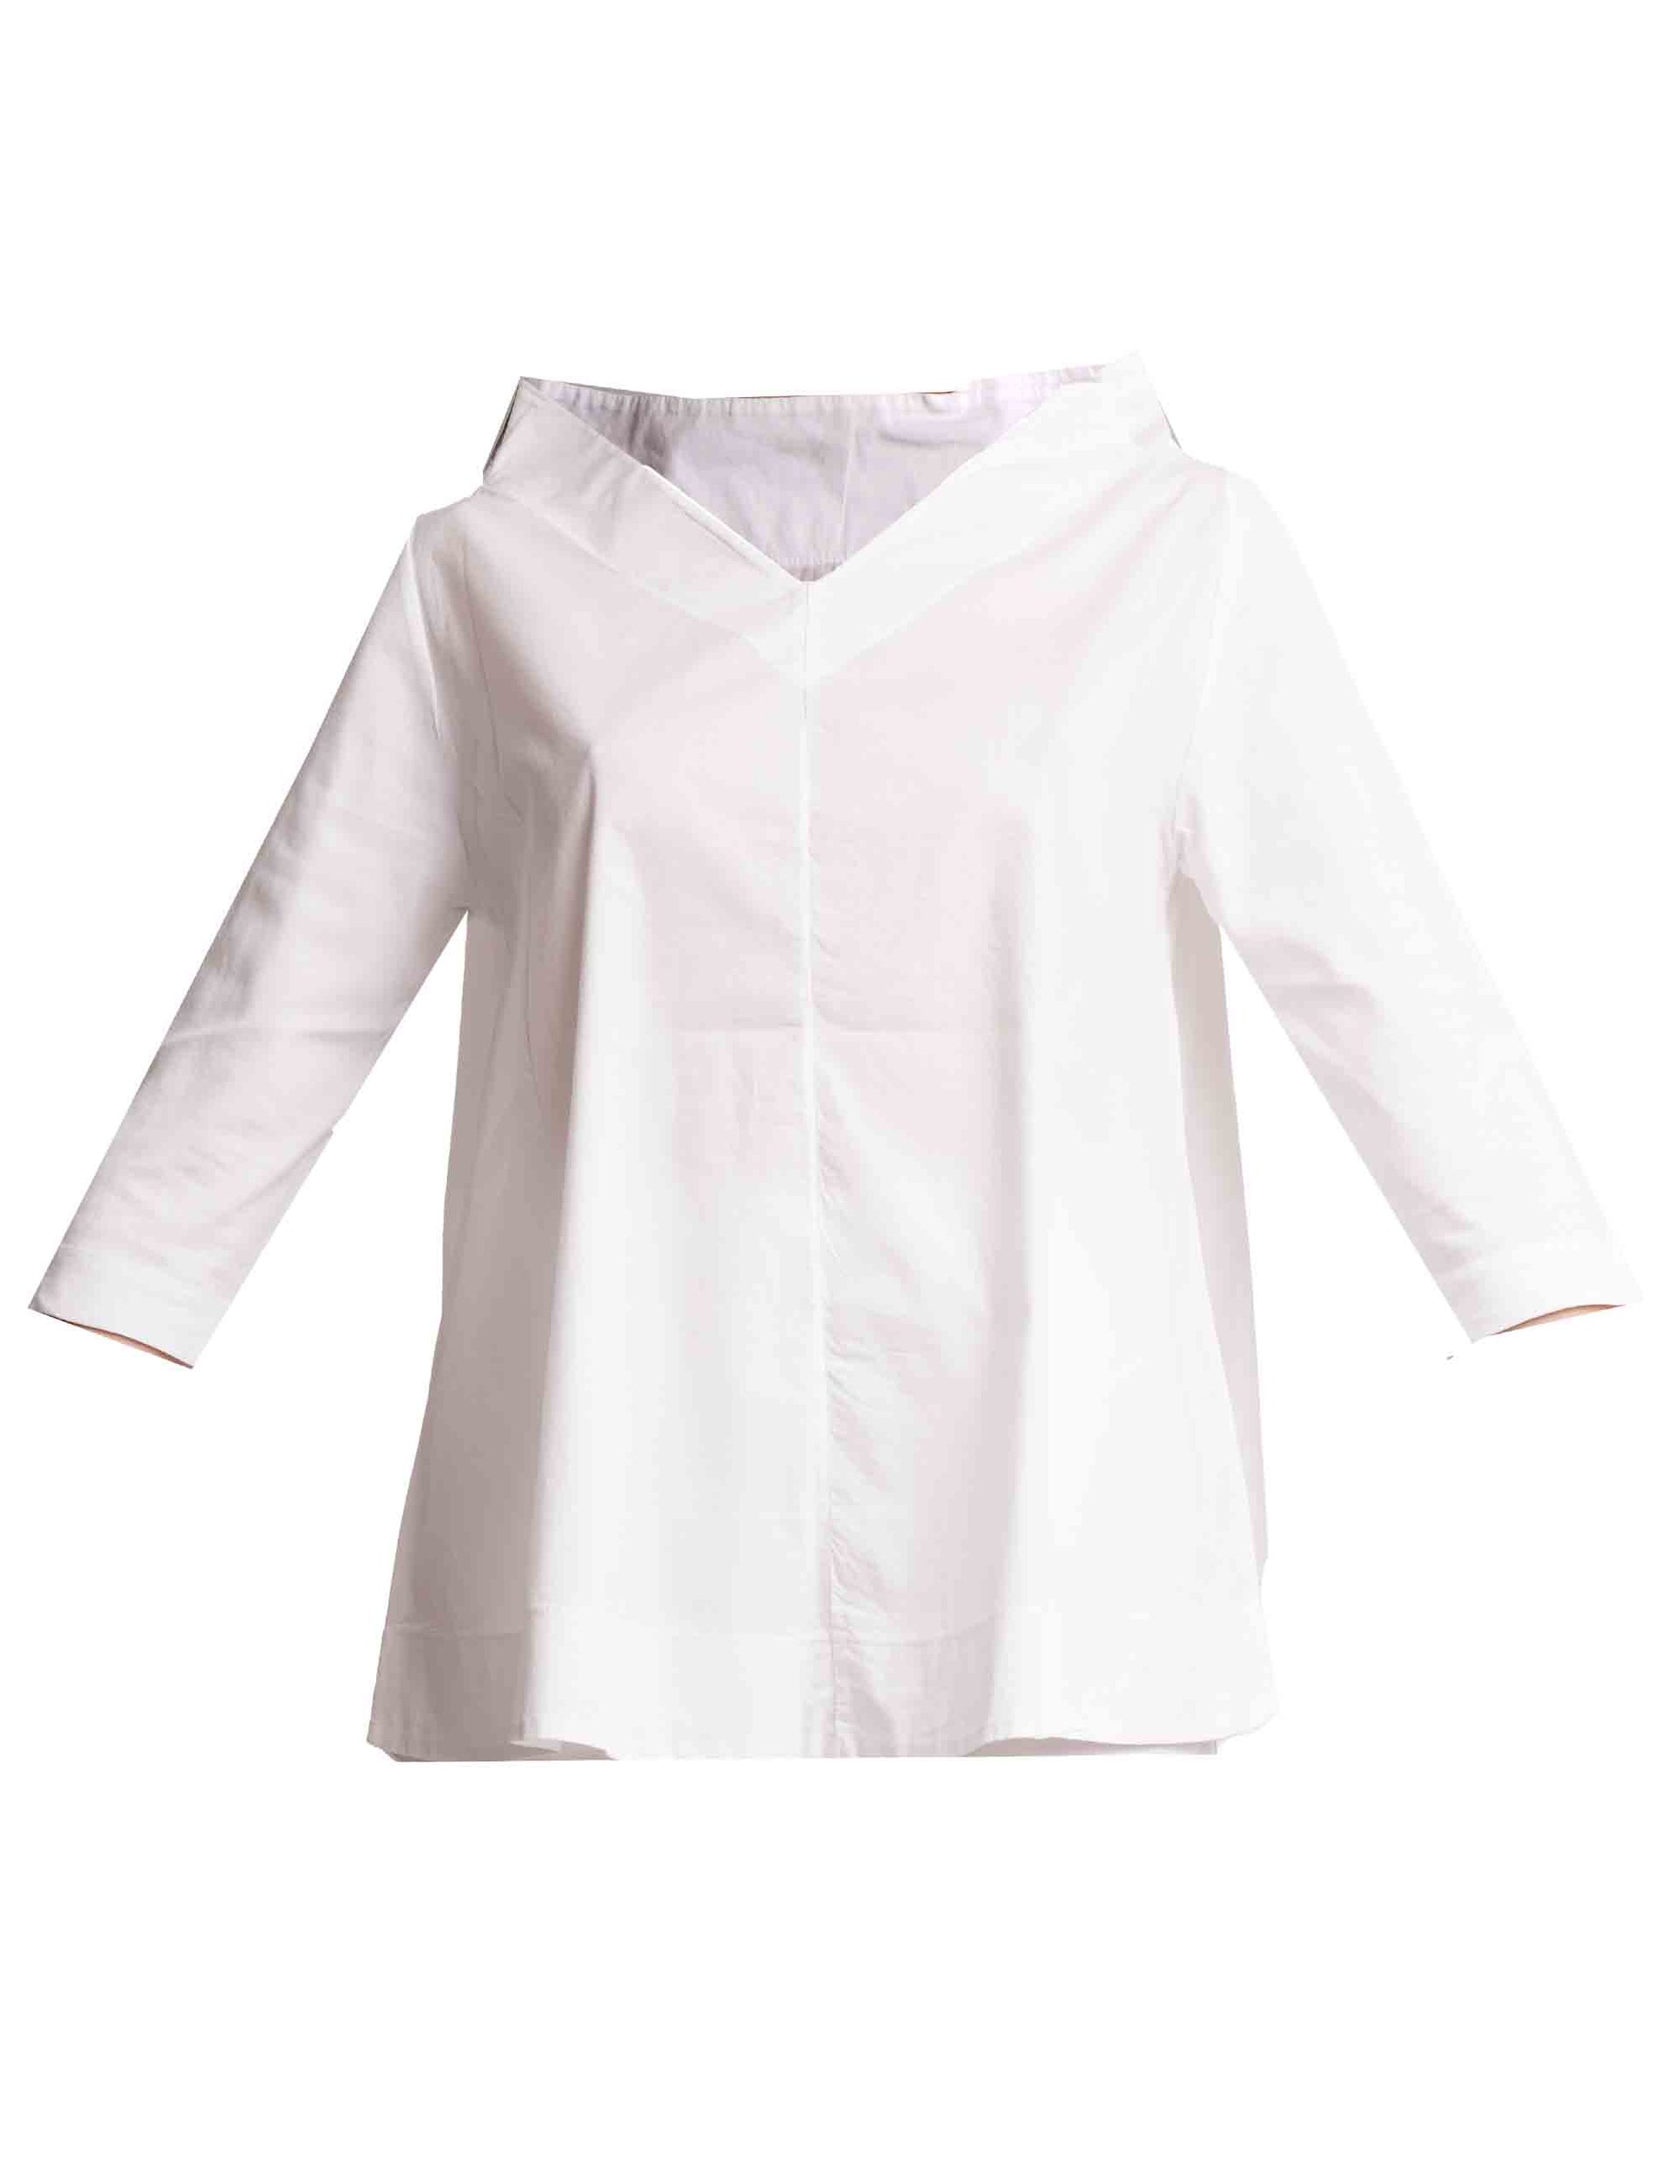 T-shirt donna in cotone bianco con scollo a V e maniche a 3/4